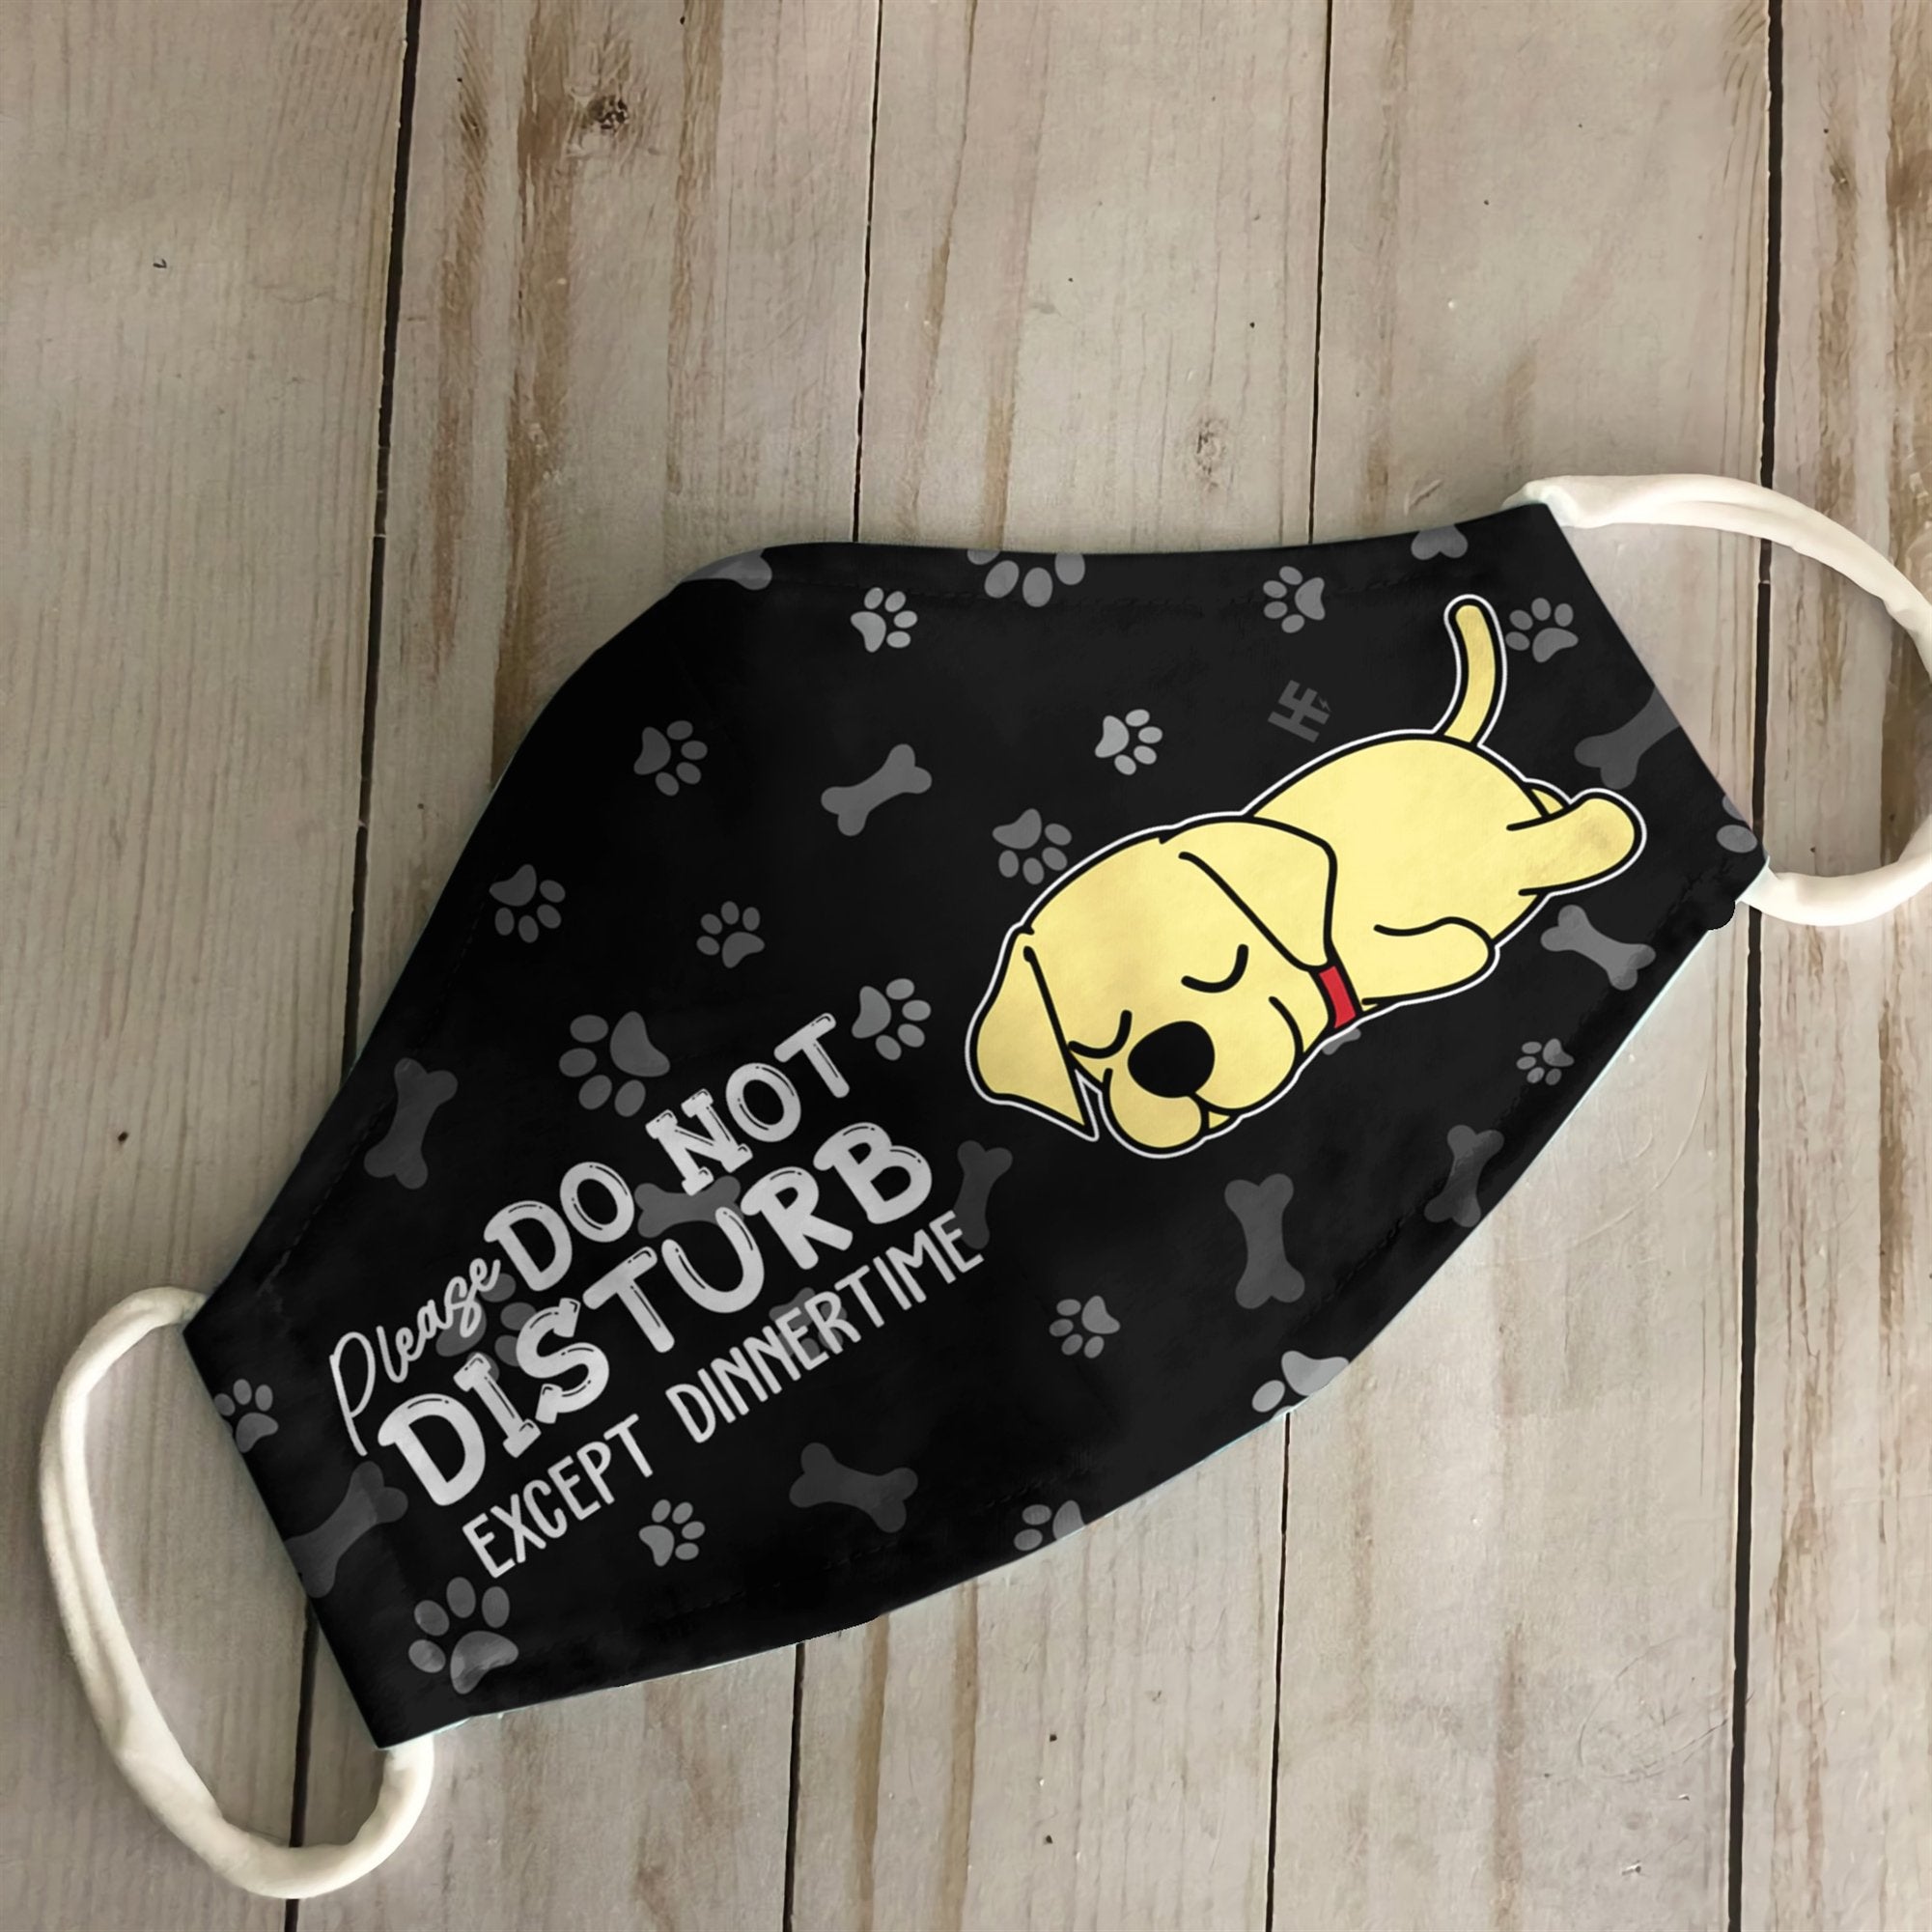 Please Do Not Disturb Except Dinnertime Labrador Black EZ16 0807 Face Mask